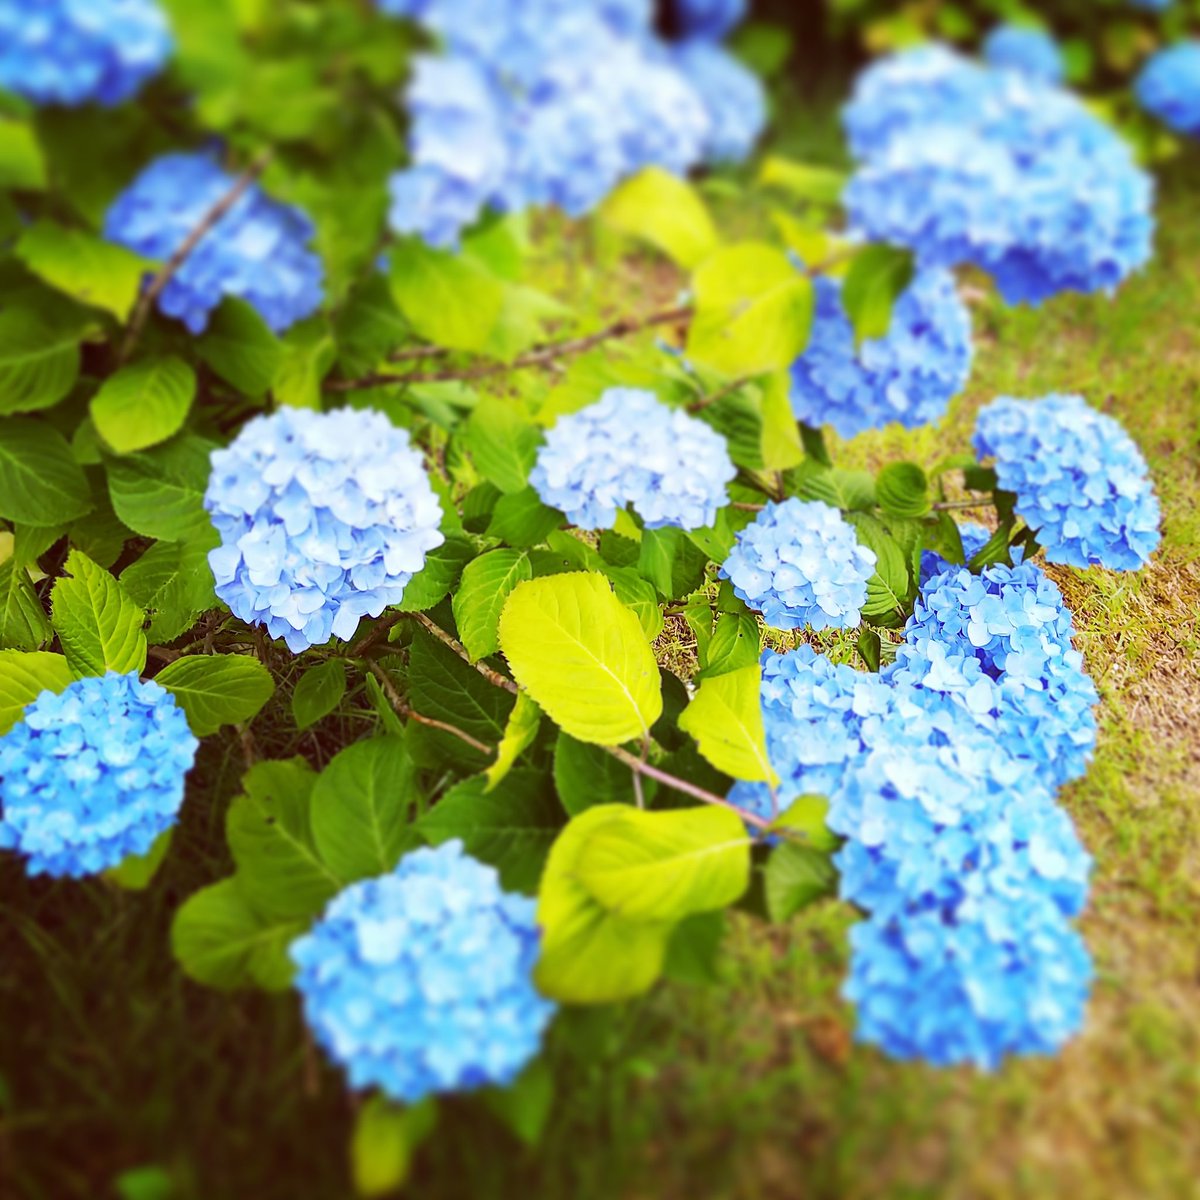 Gatchan アトリエバンド あじさいの揺れる6月の朝 新しい家族が生まれました この歌を書いてから 紫陽花 を見ると可愛く思えます そして 神戸市民の花 が紫陽花ということを知り 何か運命的なものを感じました 笑 あじさい 紫陽花 六甲山